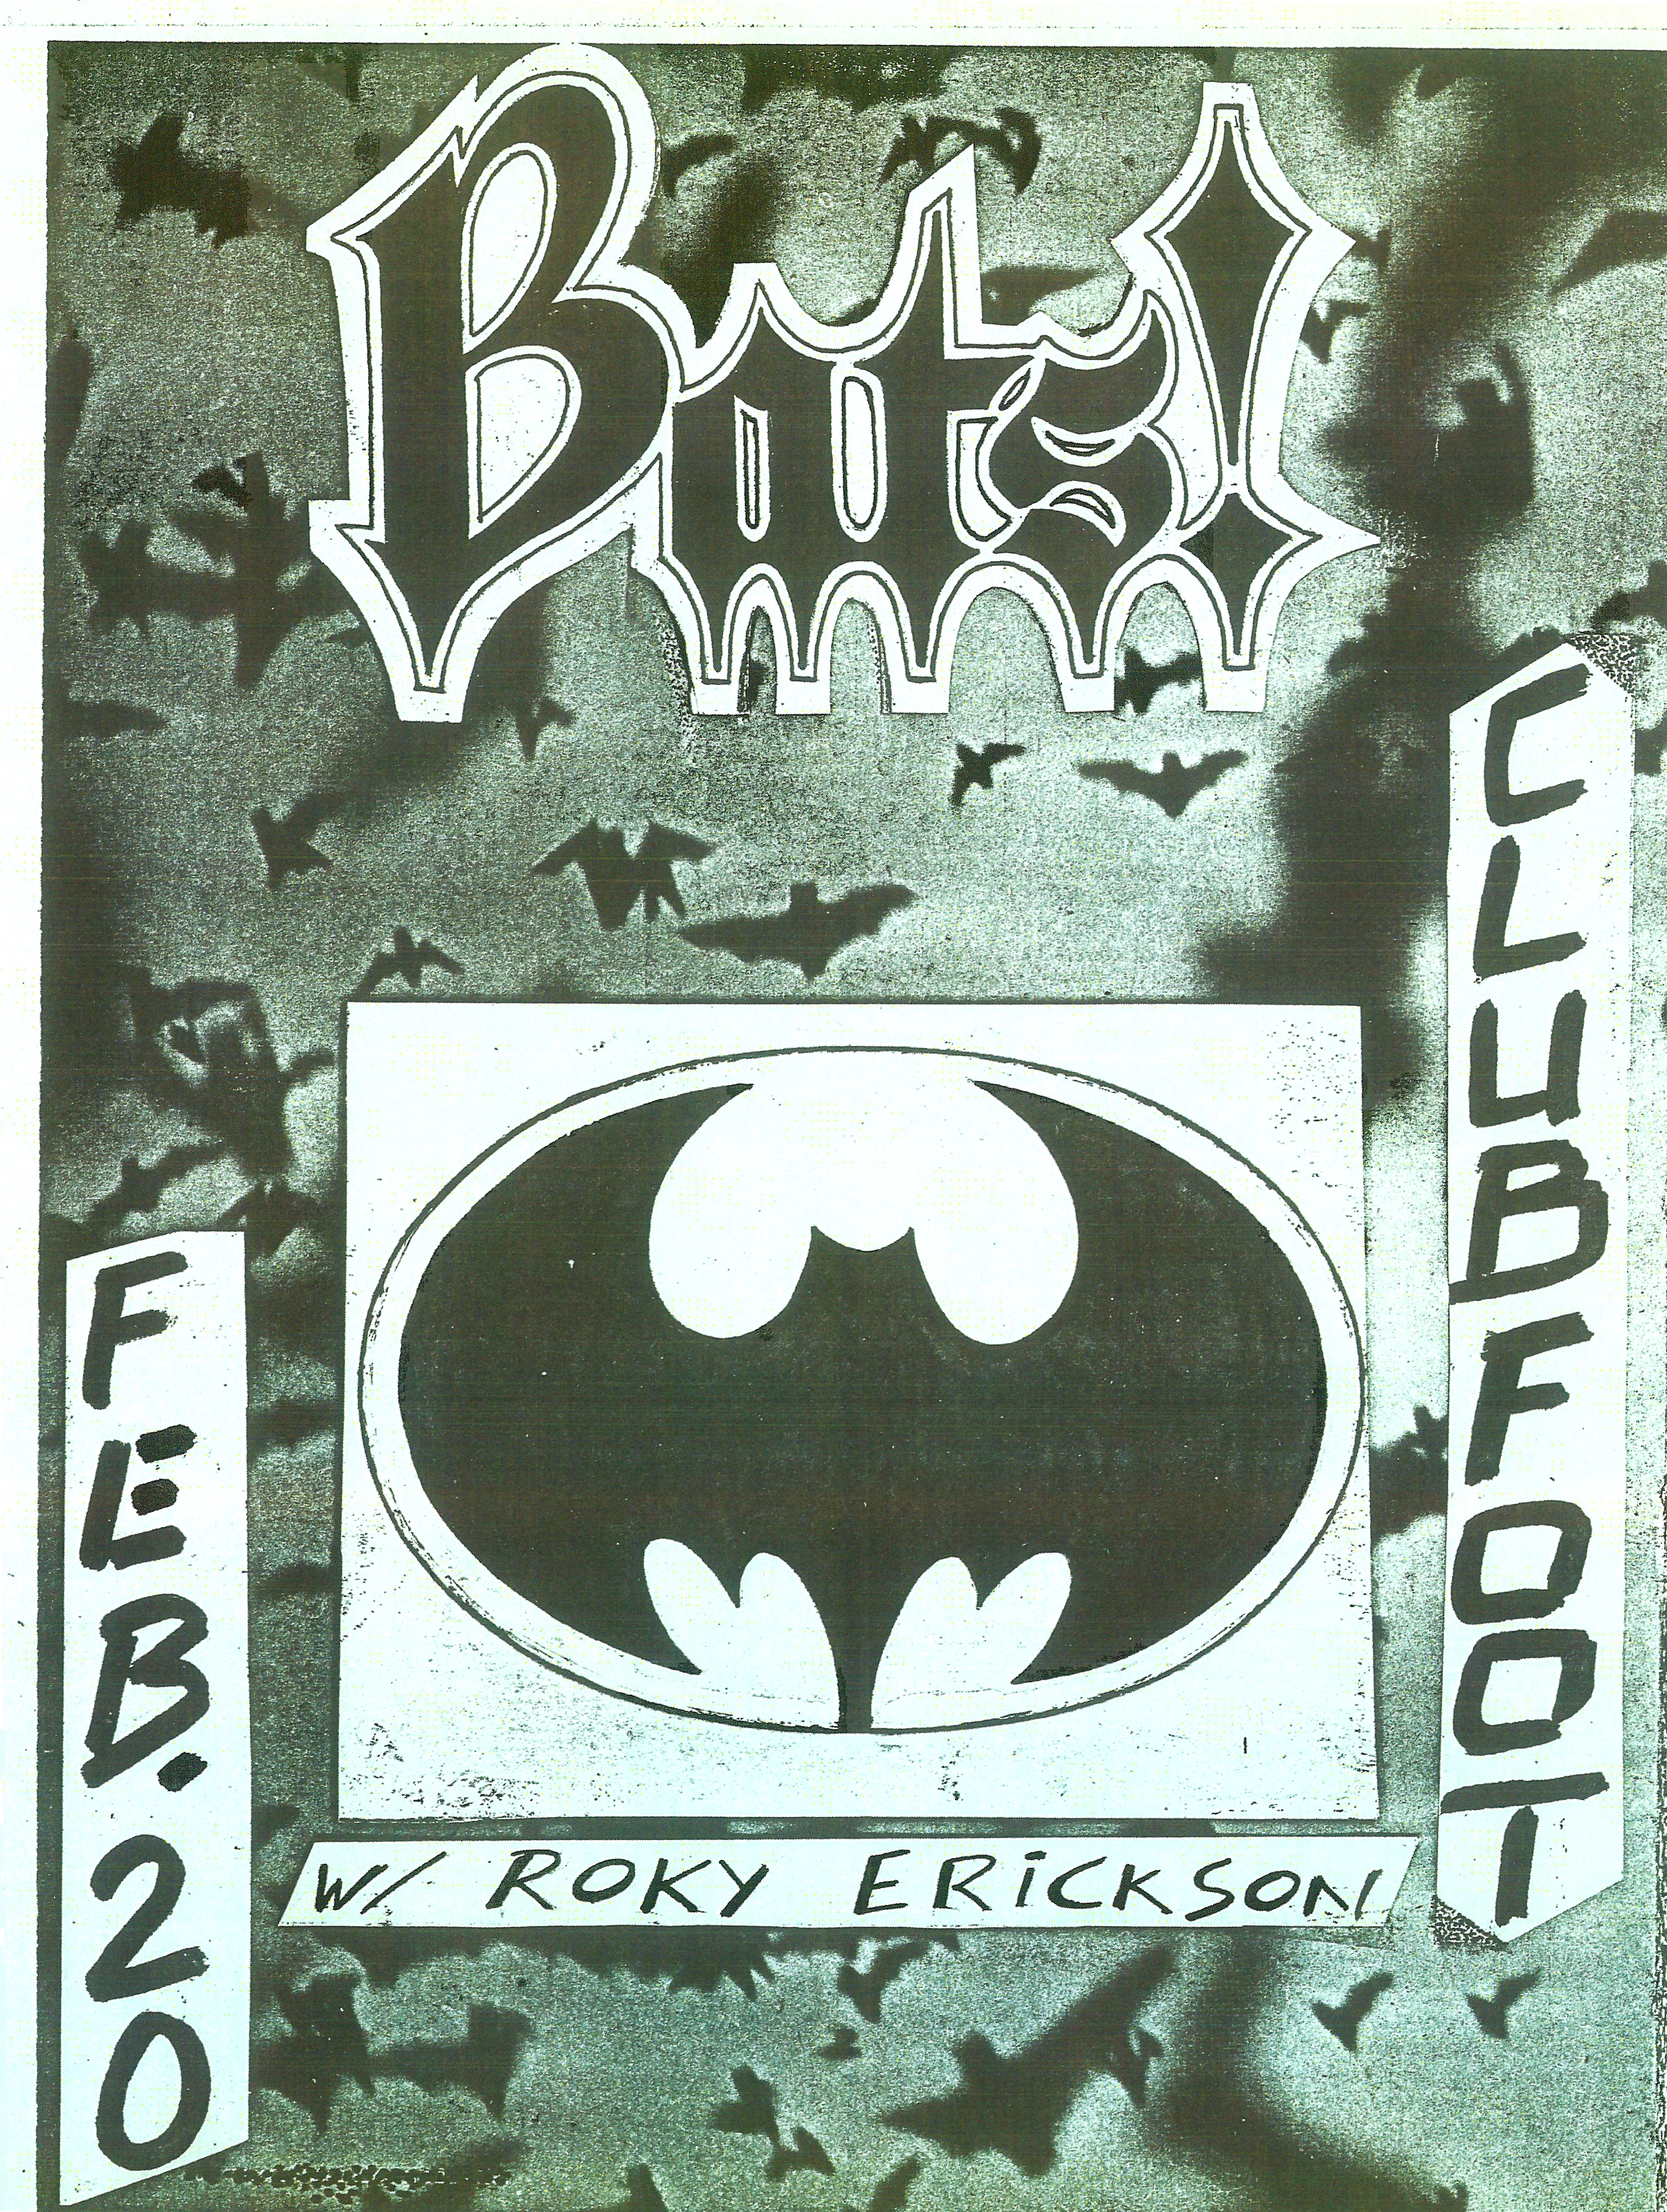 The Bats flyer